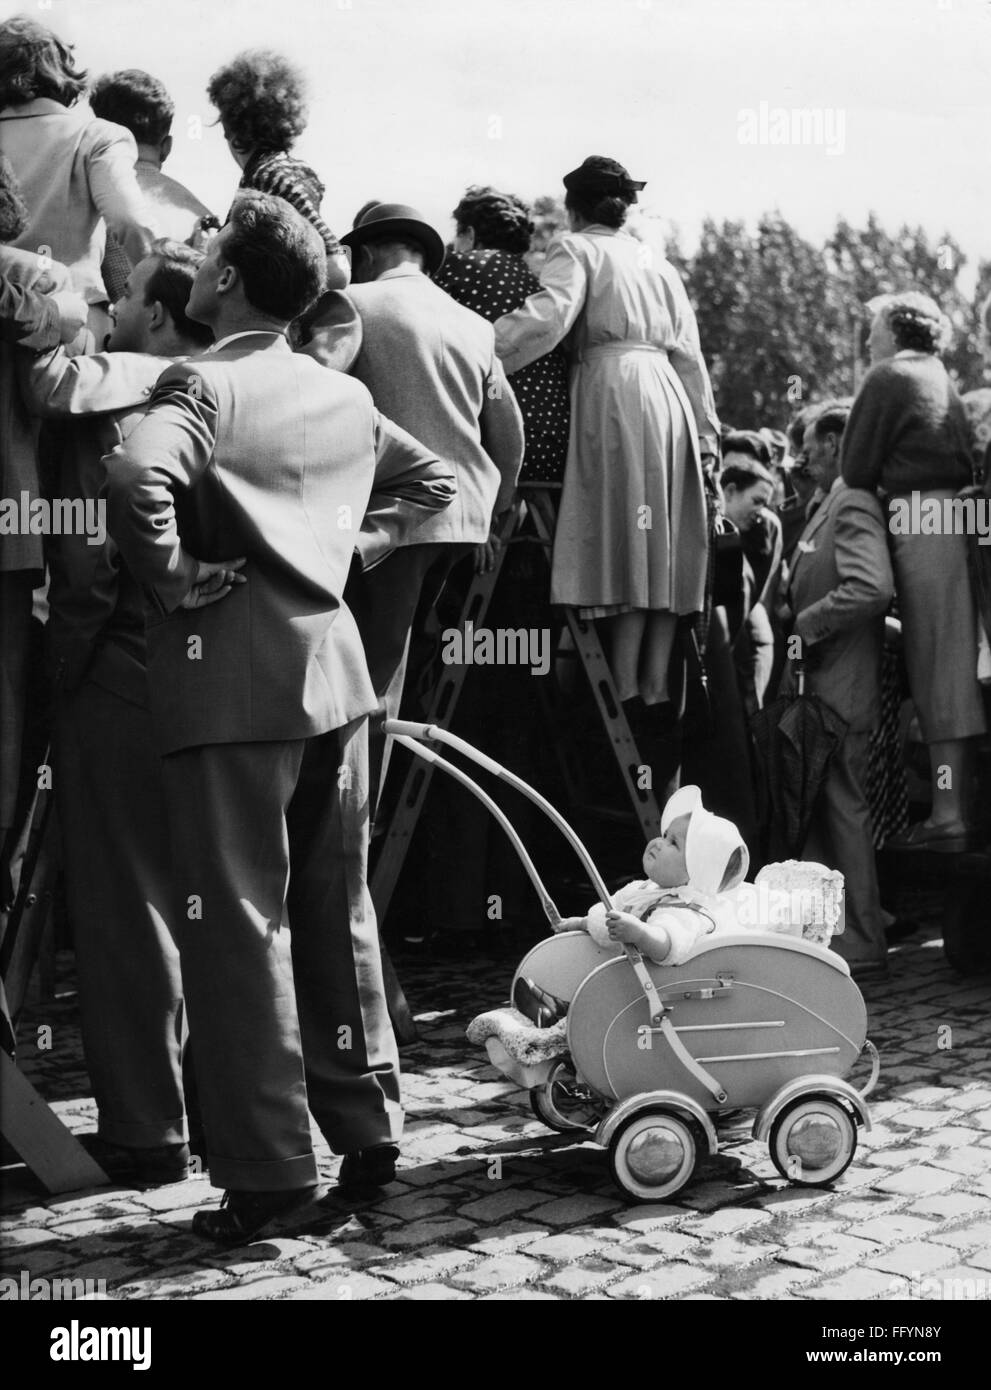 Personen, Kinder, Babys, Baby im Kinderwagen unter den Zuschauern einer öffentlichen Veranstaltung, 1961, Zusatzrechte-Clearences-nicht vorhanden Stockfoto